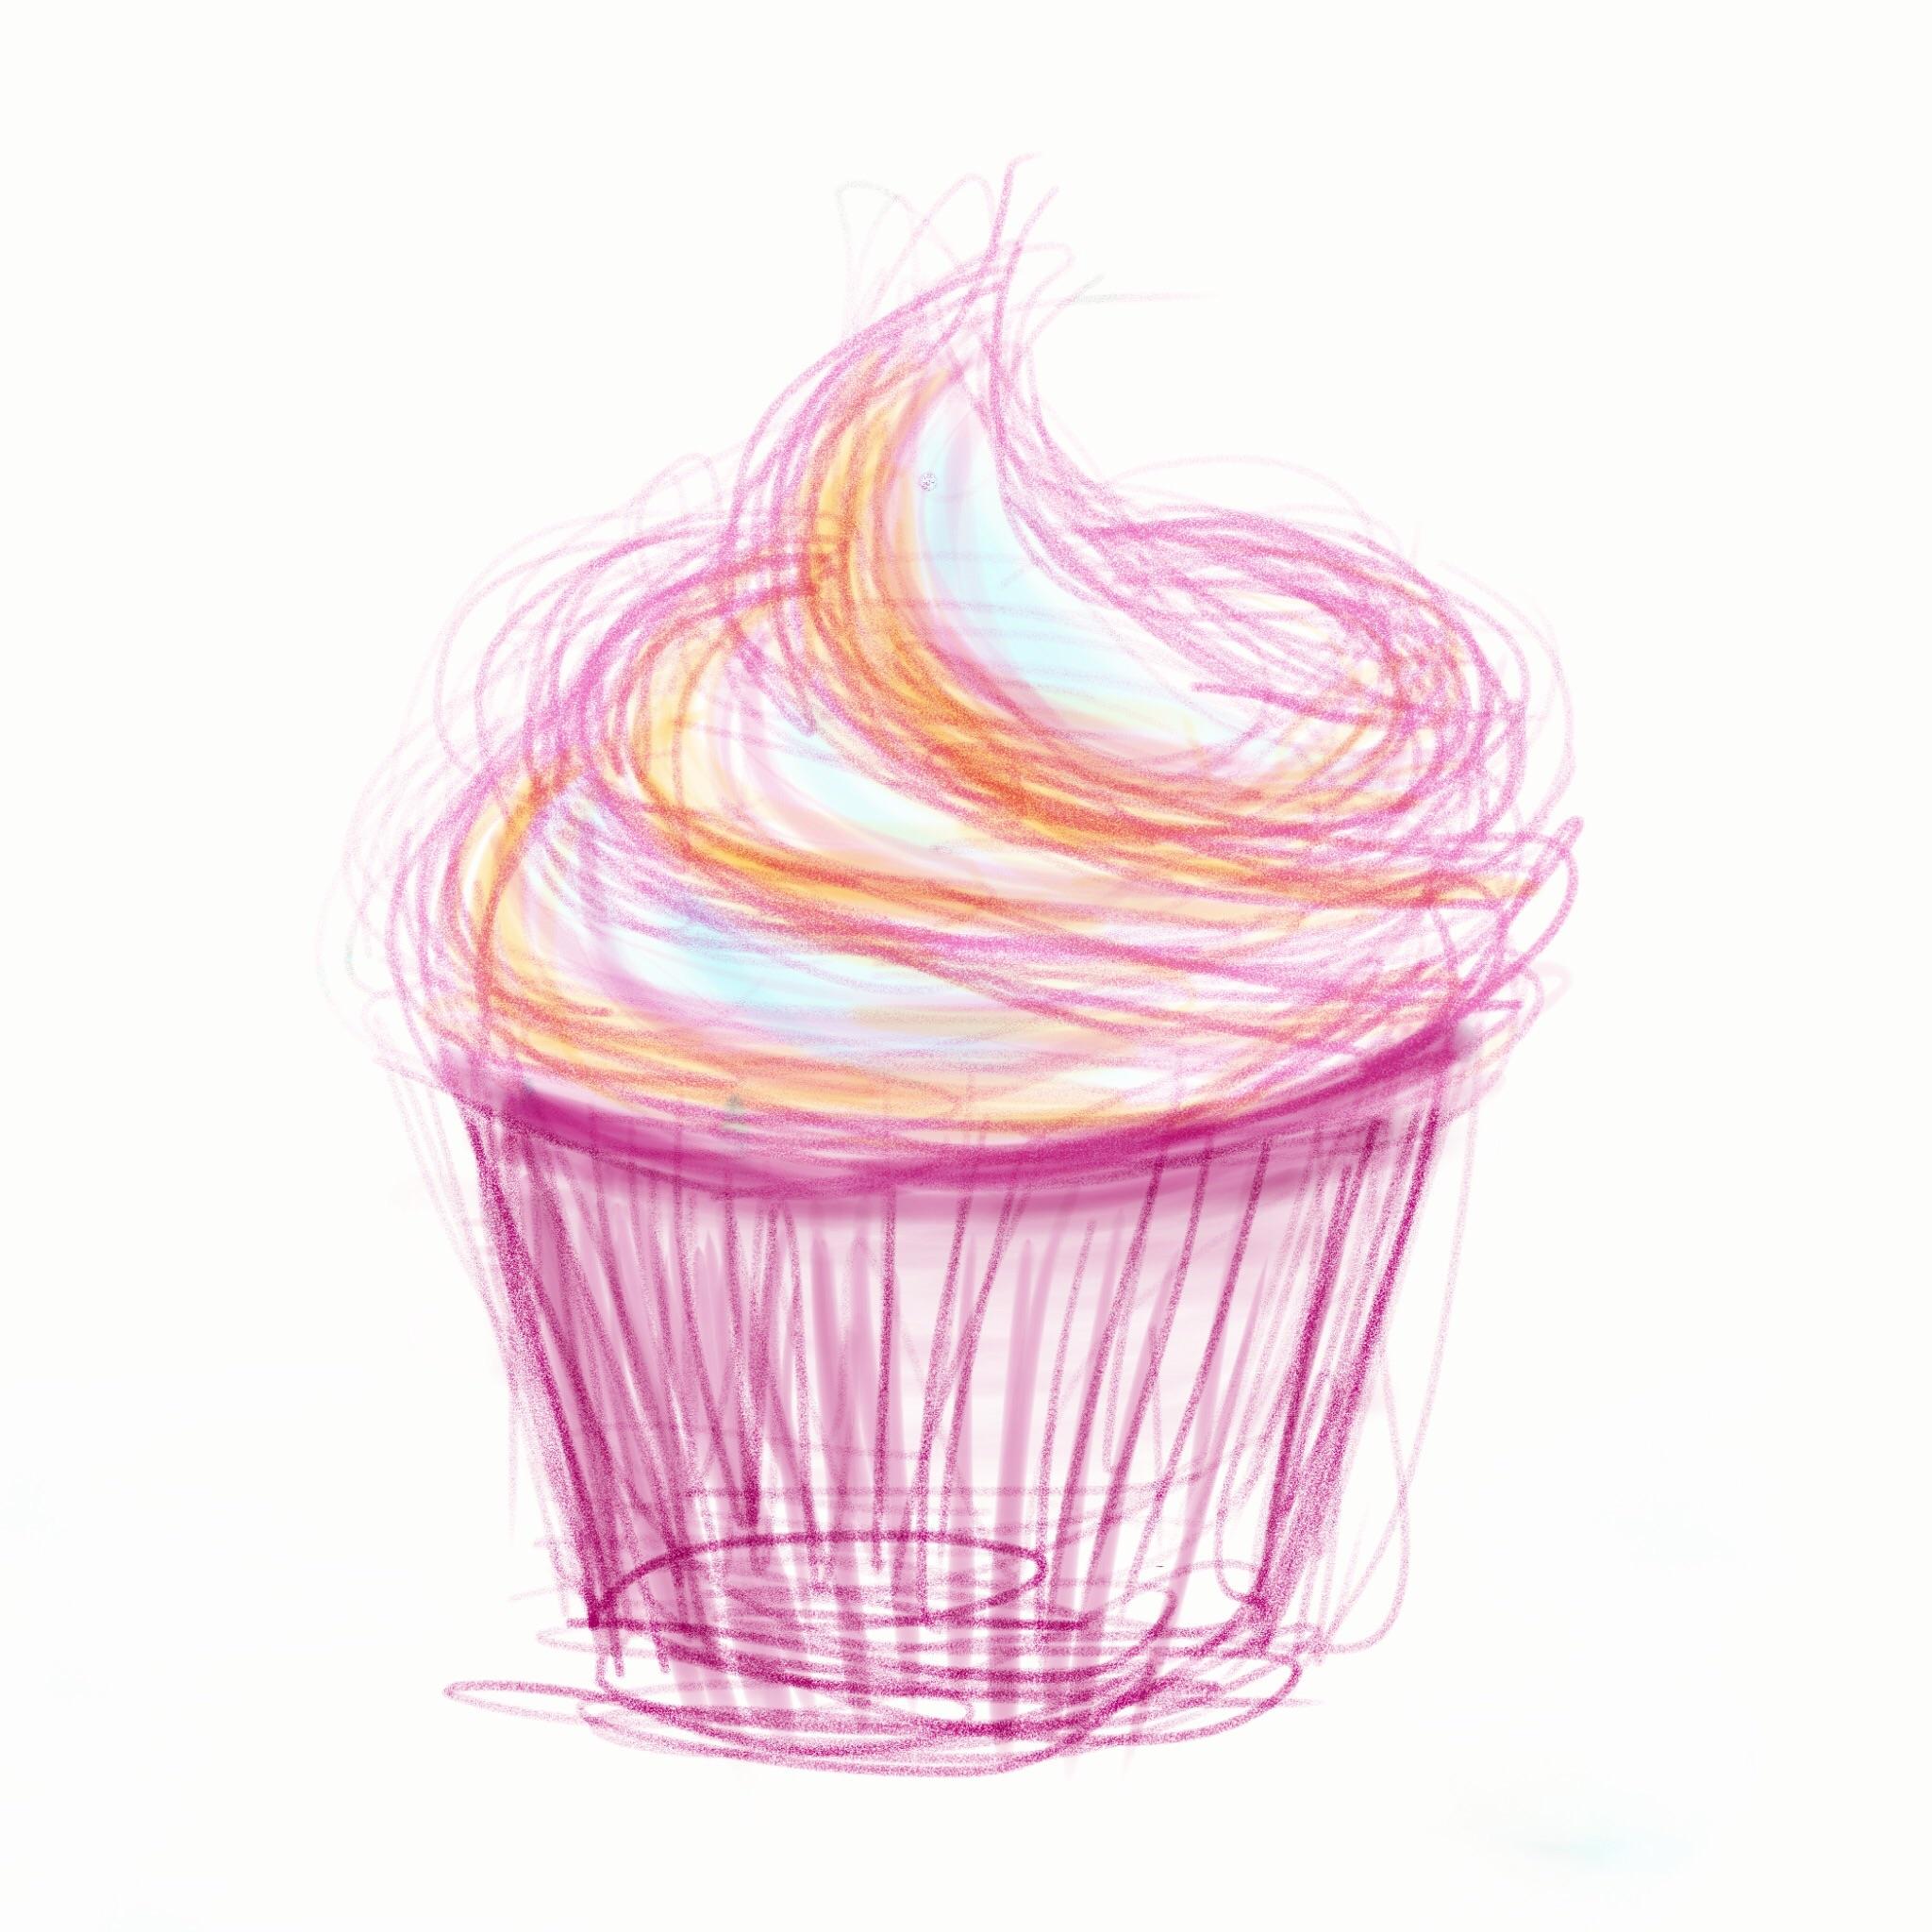 Cupcake Drawing Modern Sketch